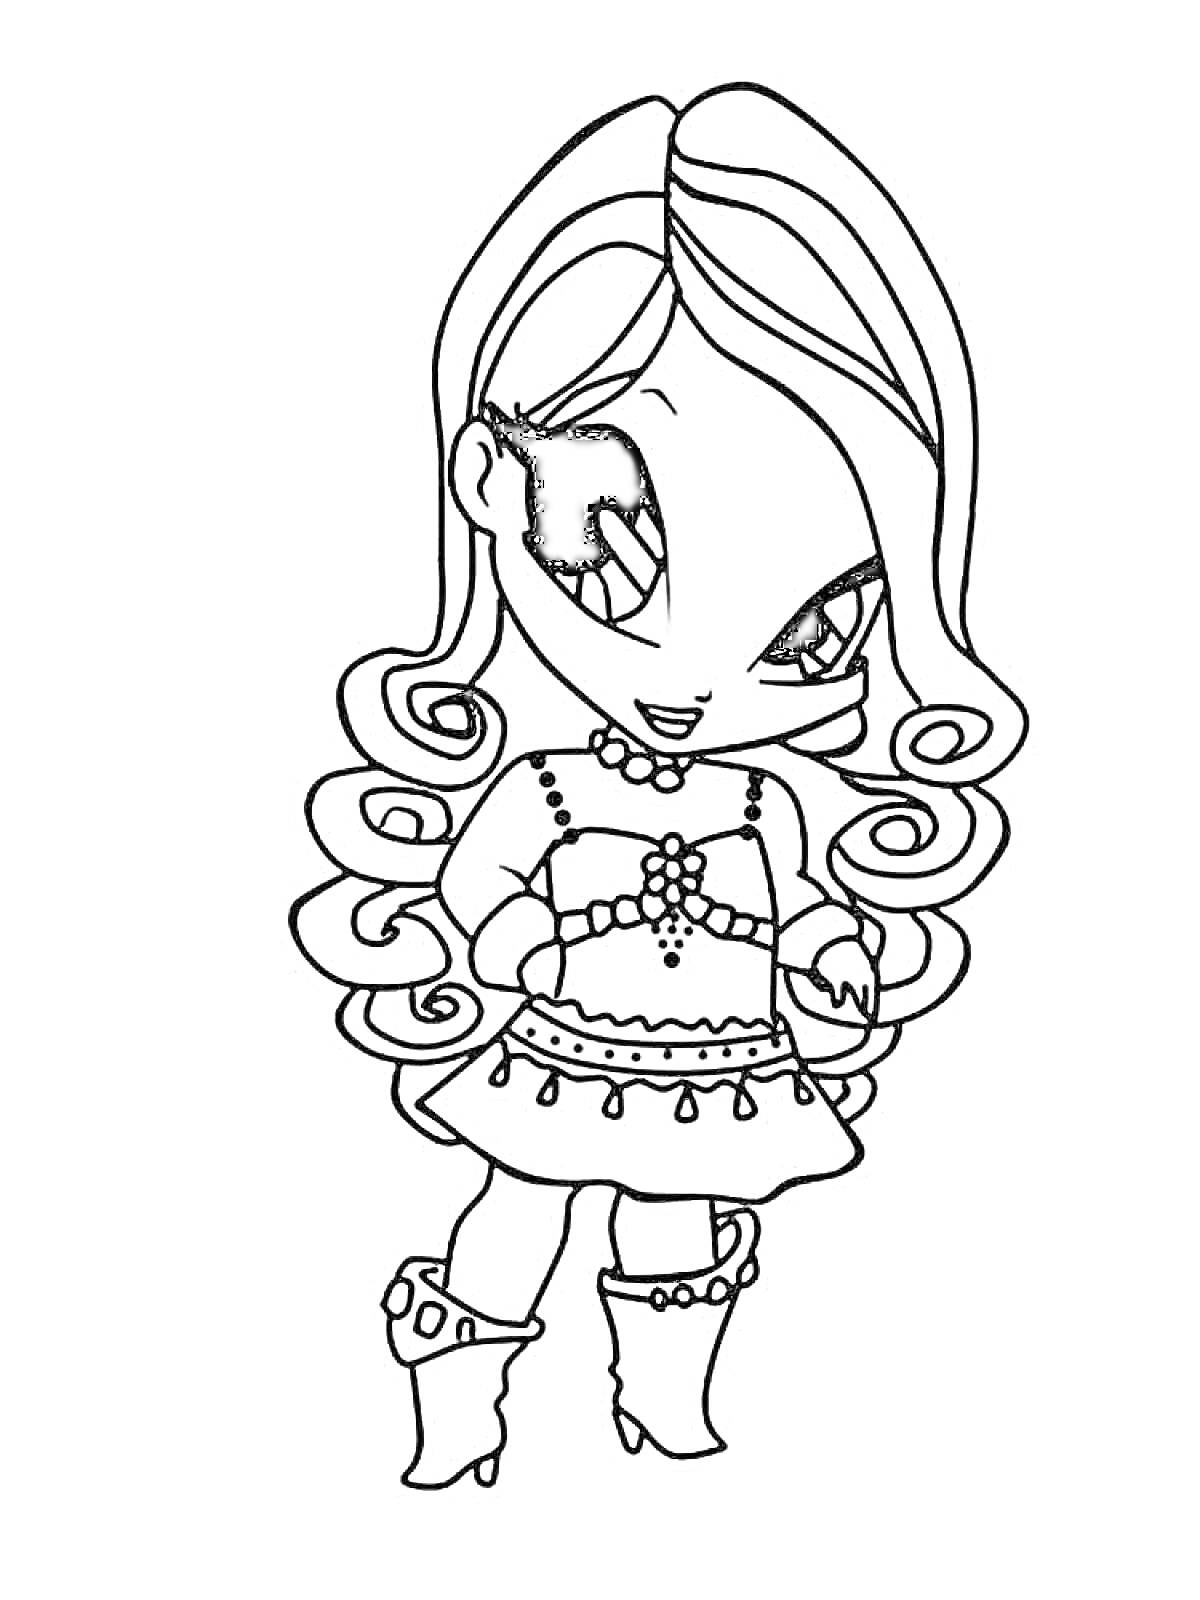 Раскраска Пикси с длинными волосами, в свитере и юбке с узорами и ботинках на каблуках